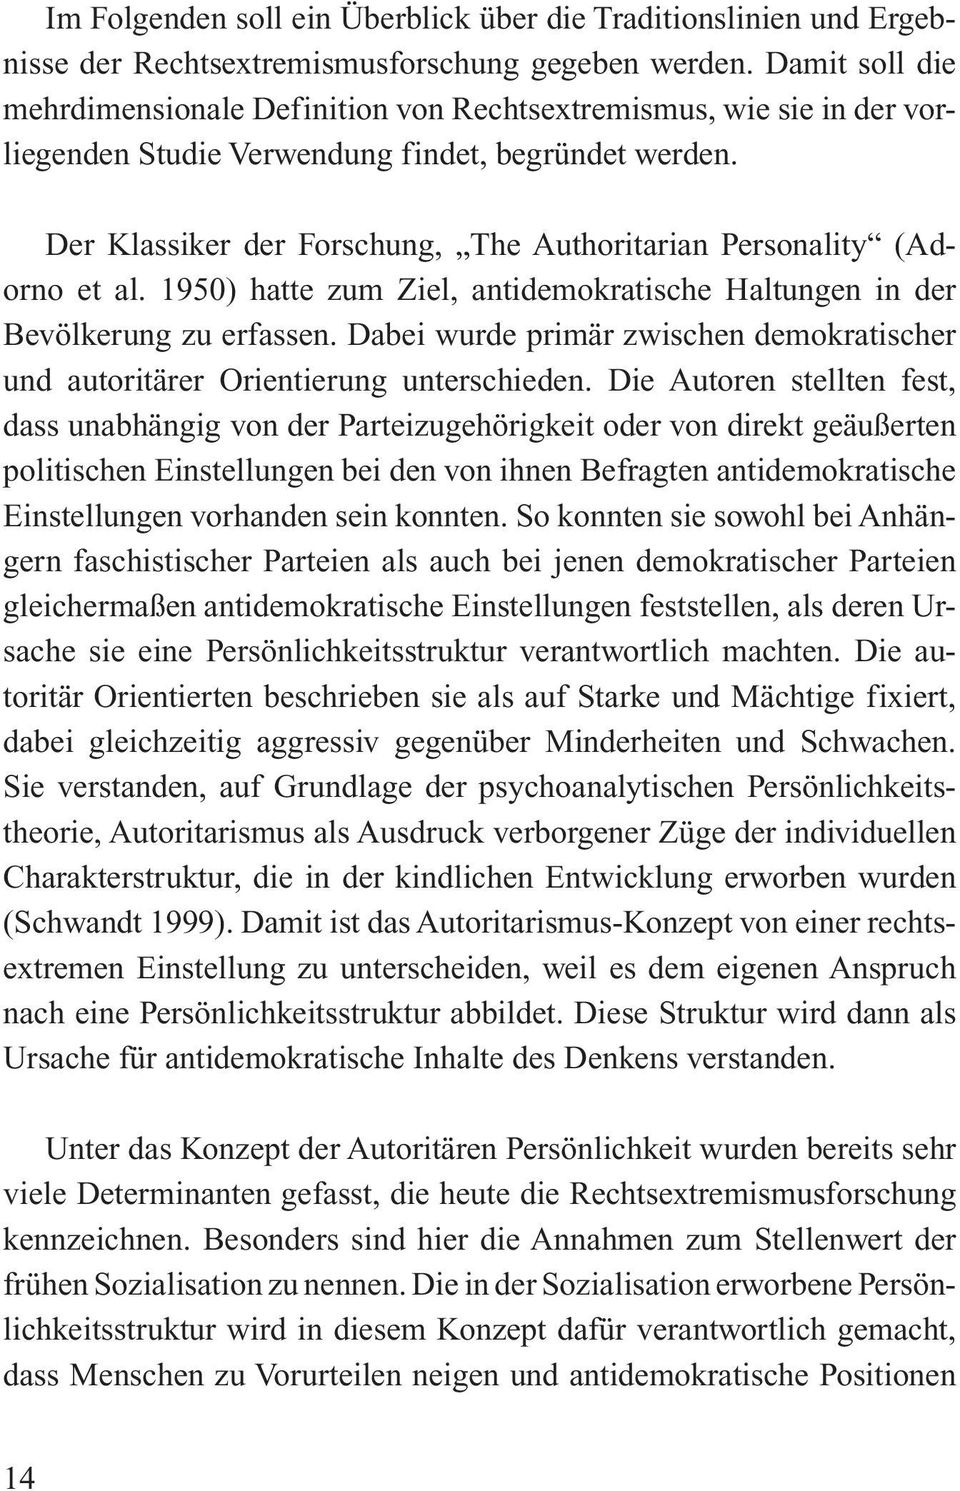 Der Klassiker der Forschung, The Authoritarian Personality (Adorno et al. 1950) hatte zum Ziel, antidemokratische Haltungen in der Bevölkerung zu erfassen.